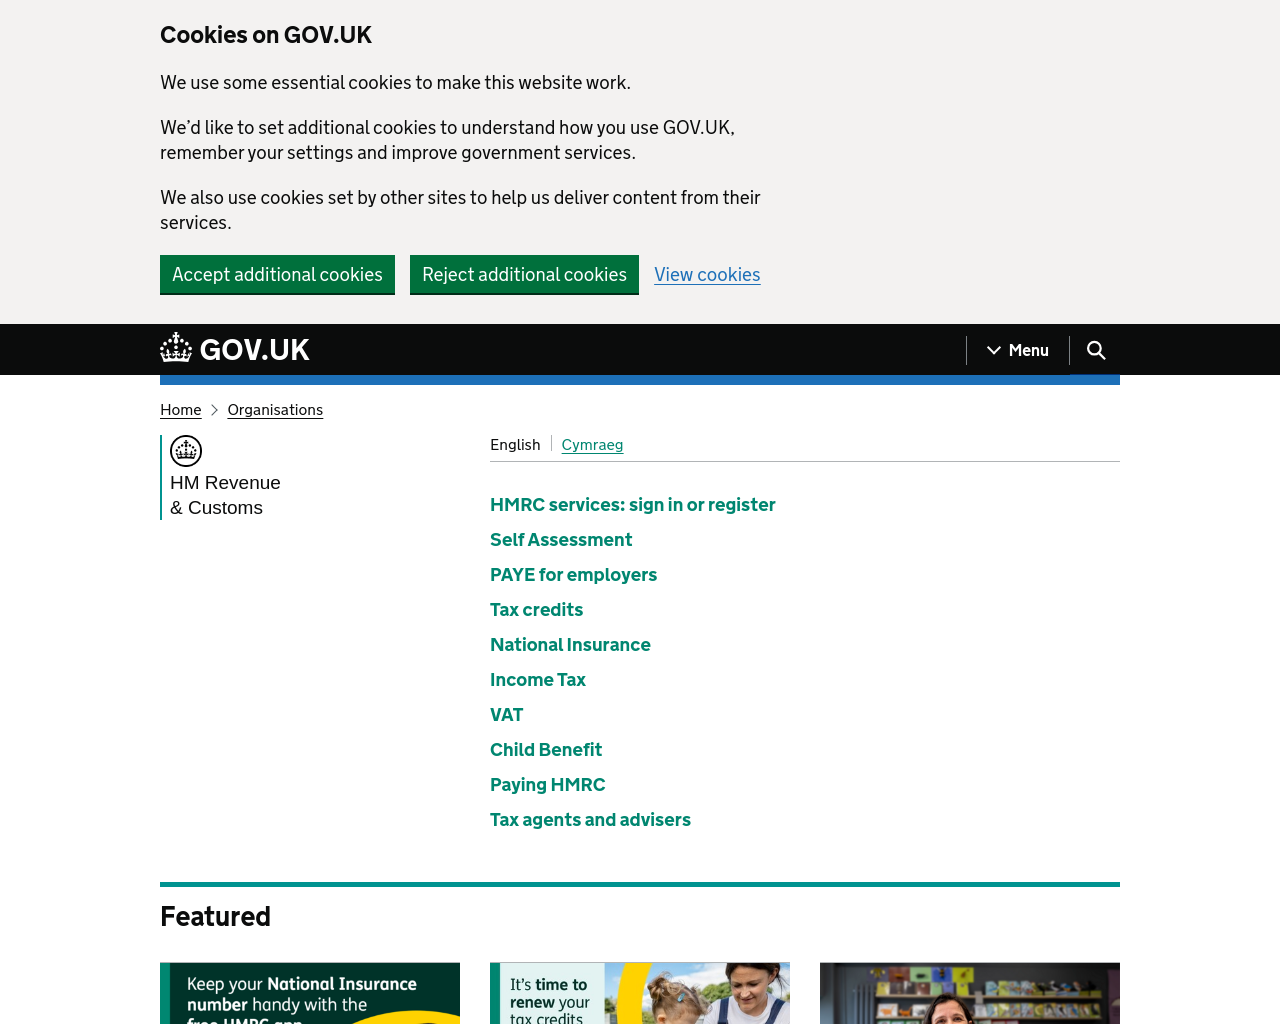 hmrc.gov.uk